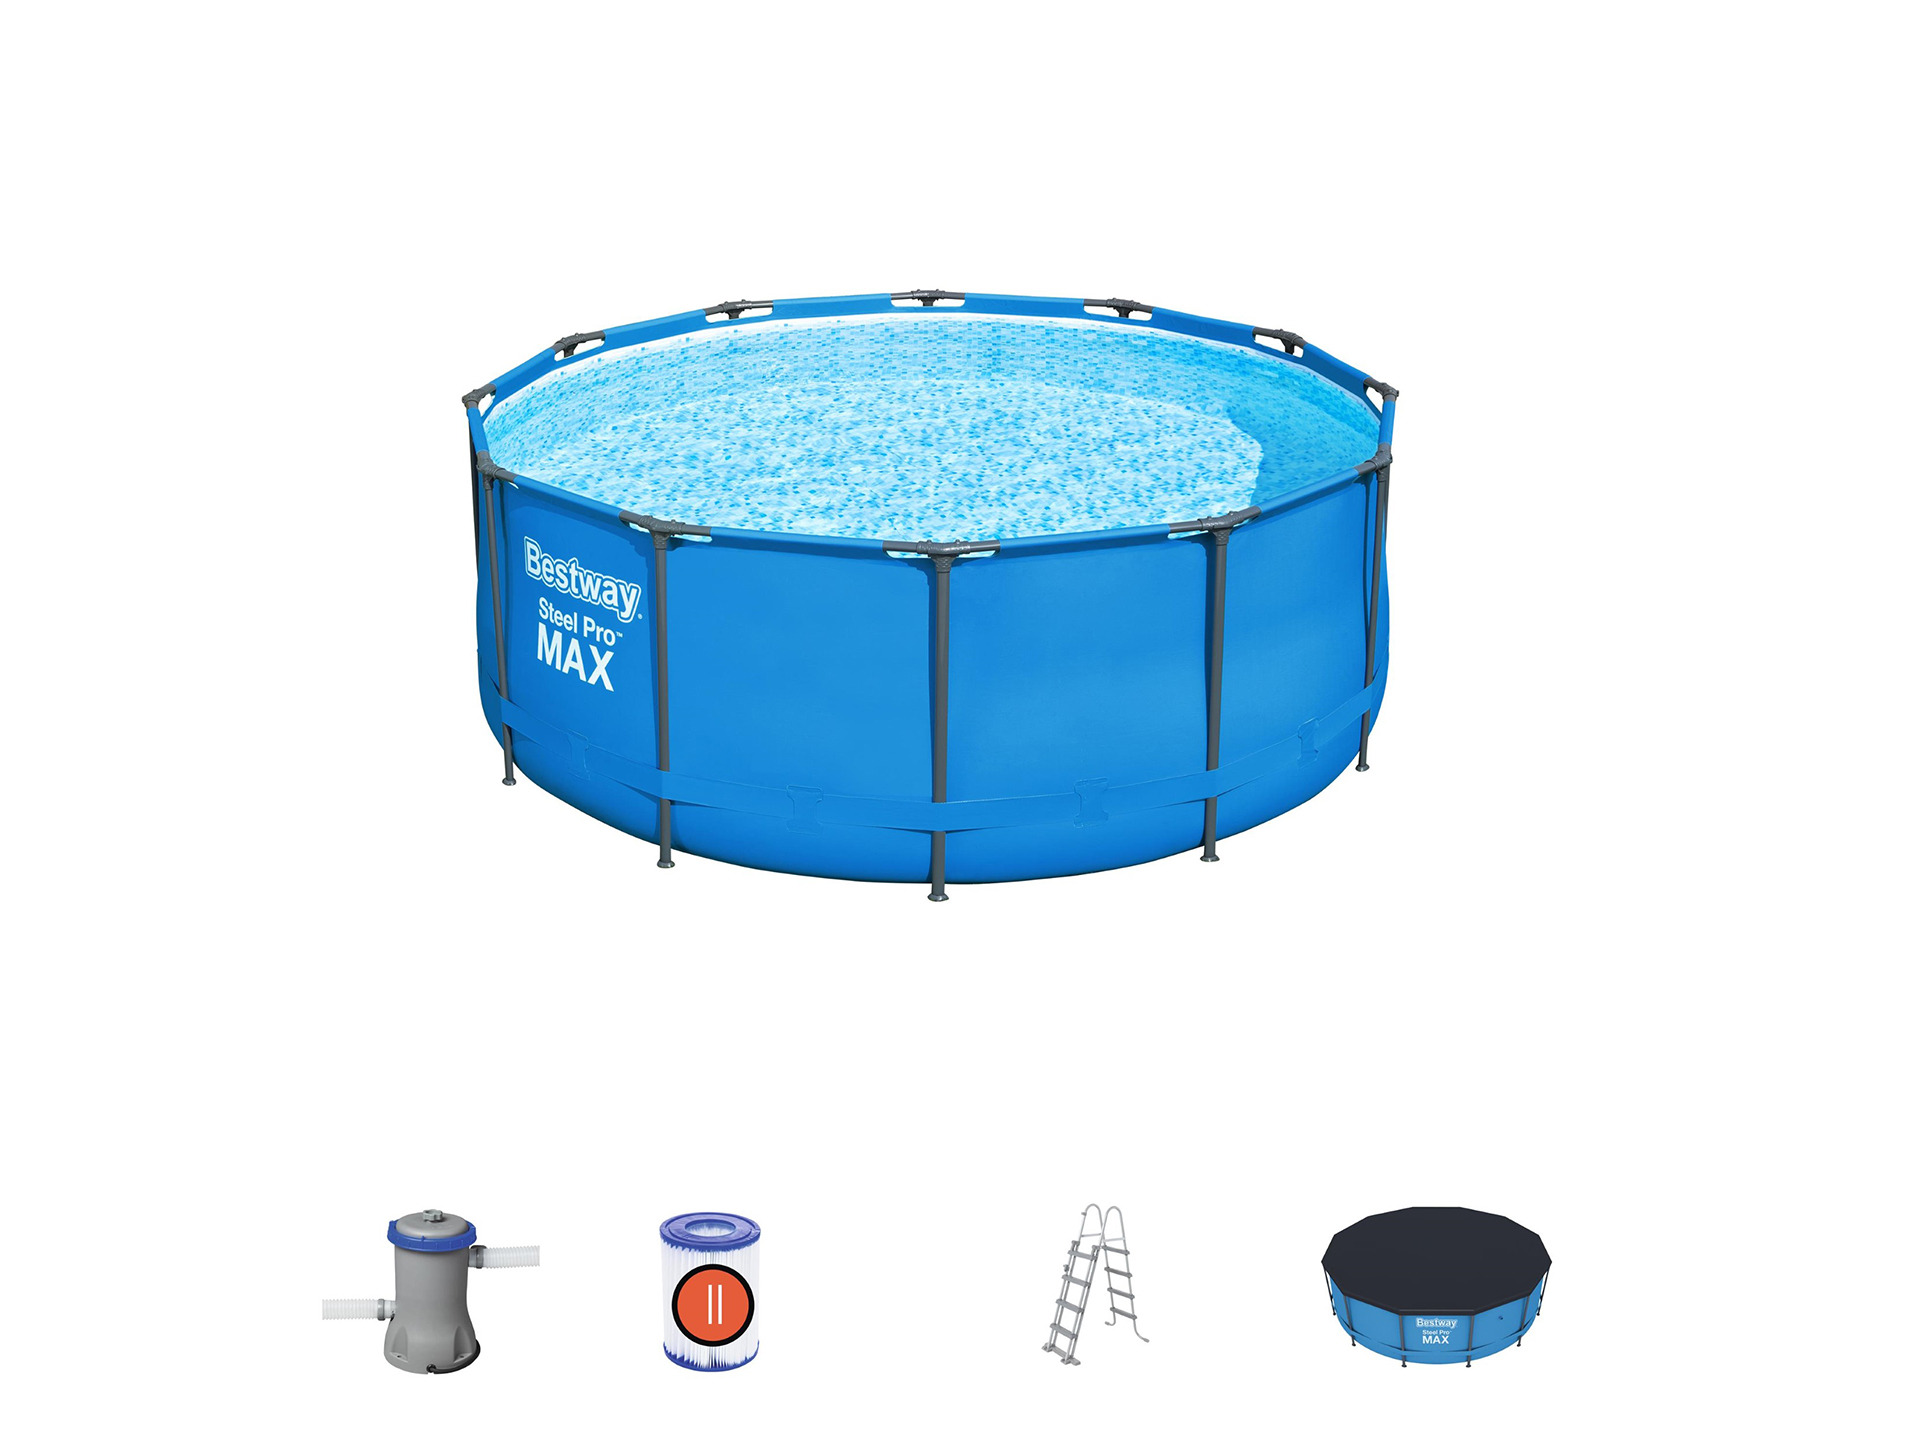 Janice Bakken Bedachtzaam Bestway" zwembad steel pro max set rond 366 x 122 cm // Topkwaliteit